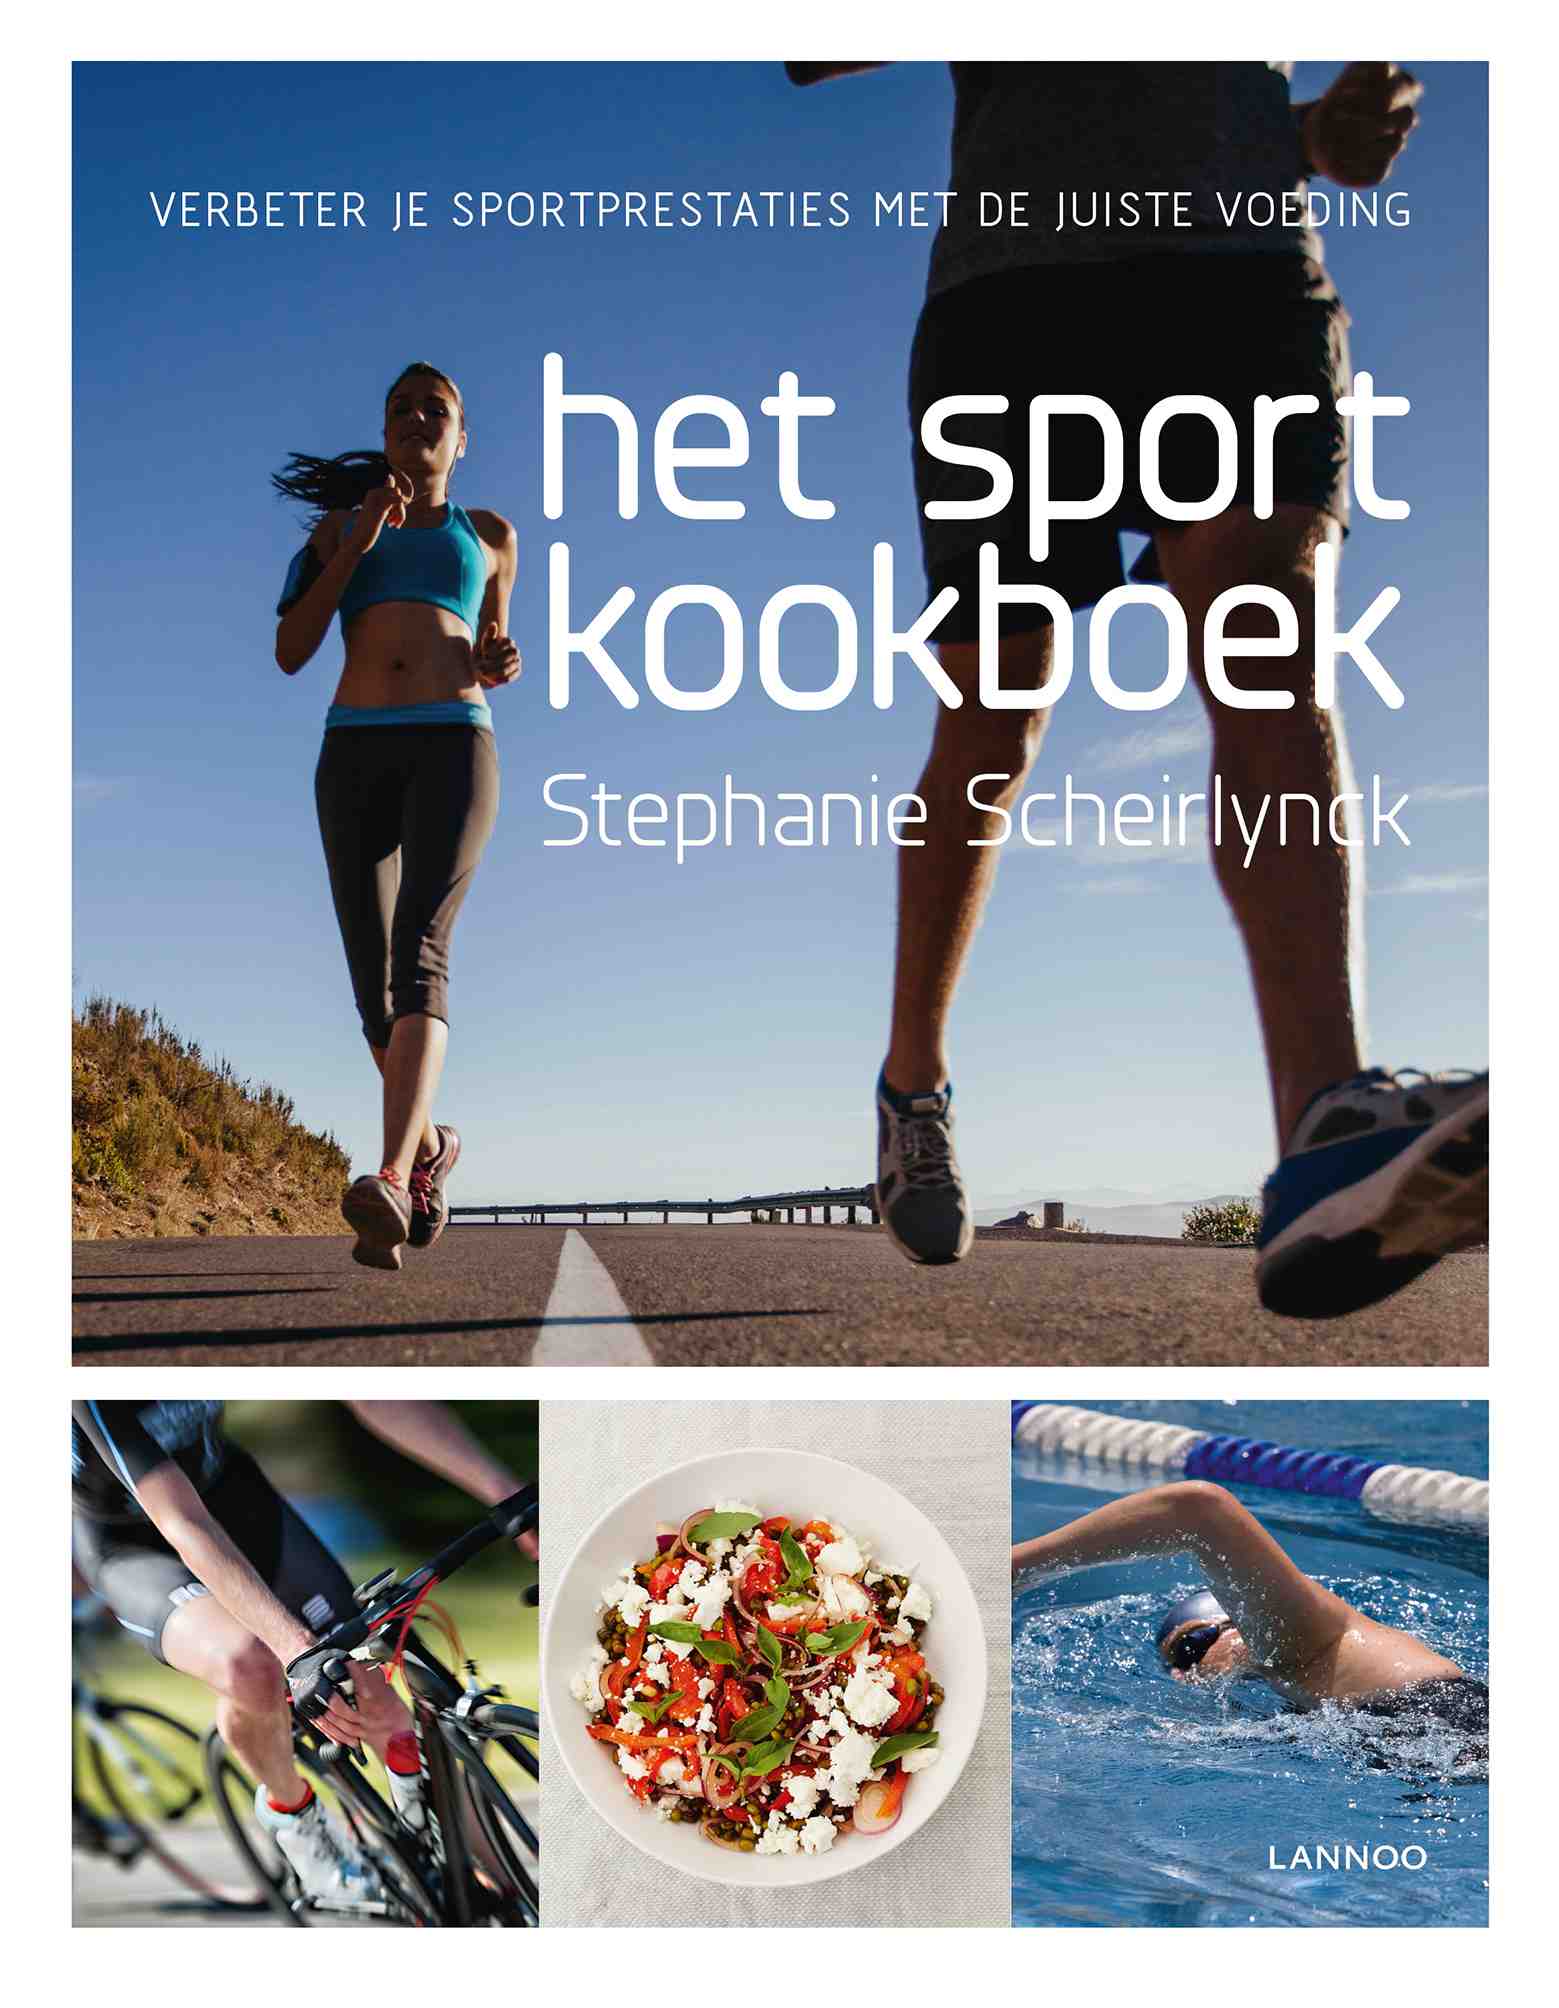 Het sportkookboek (c) Lannoo